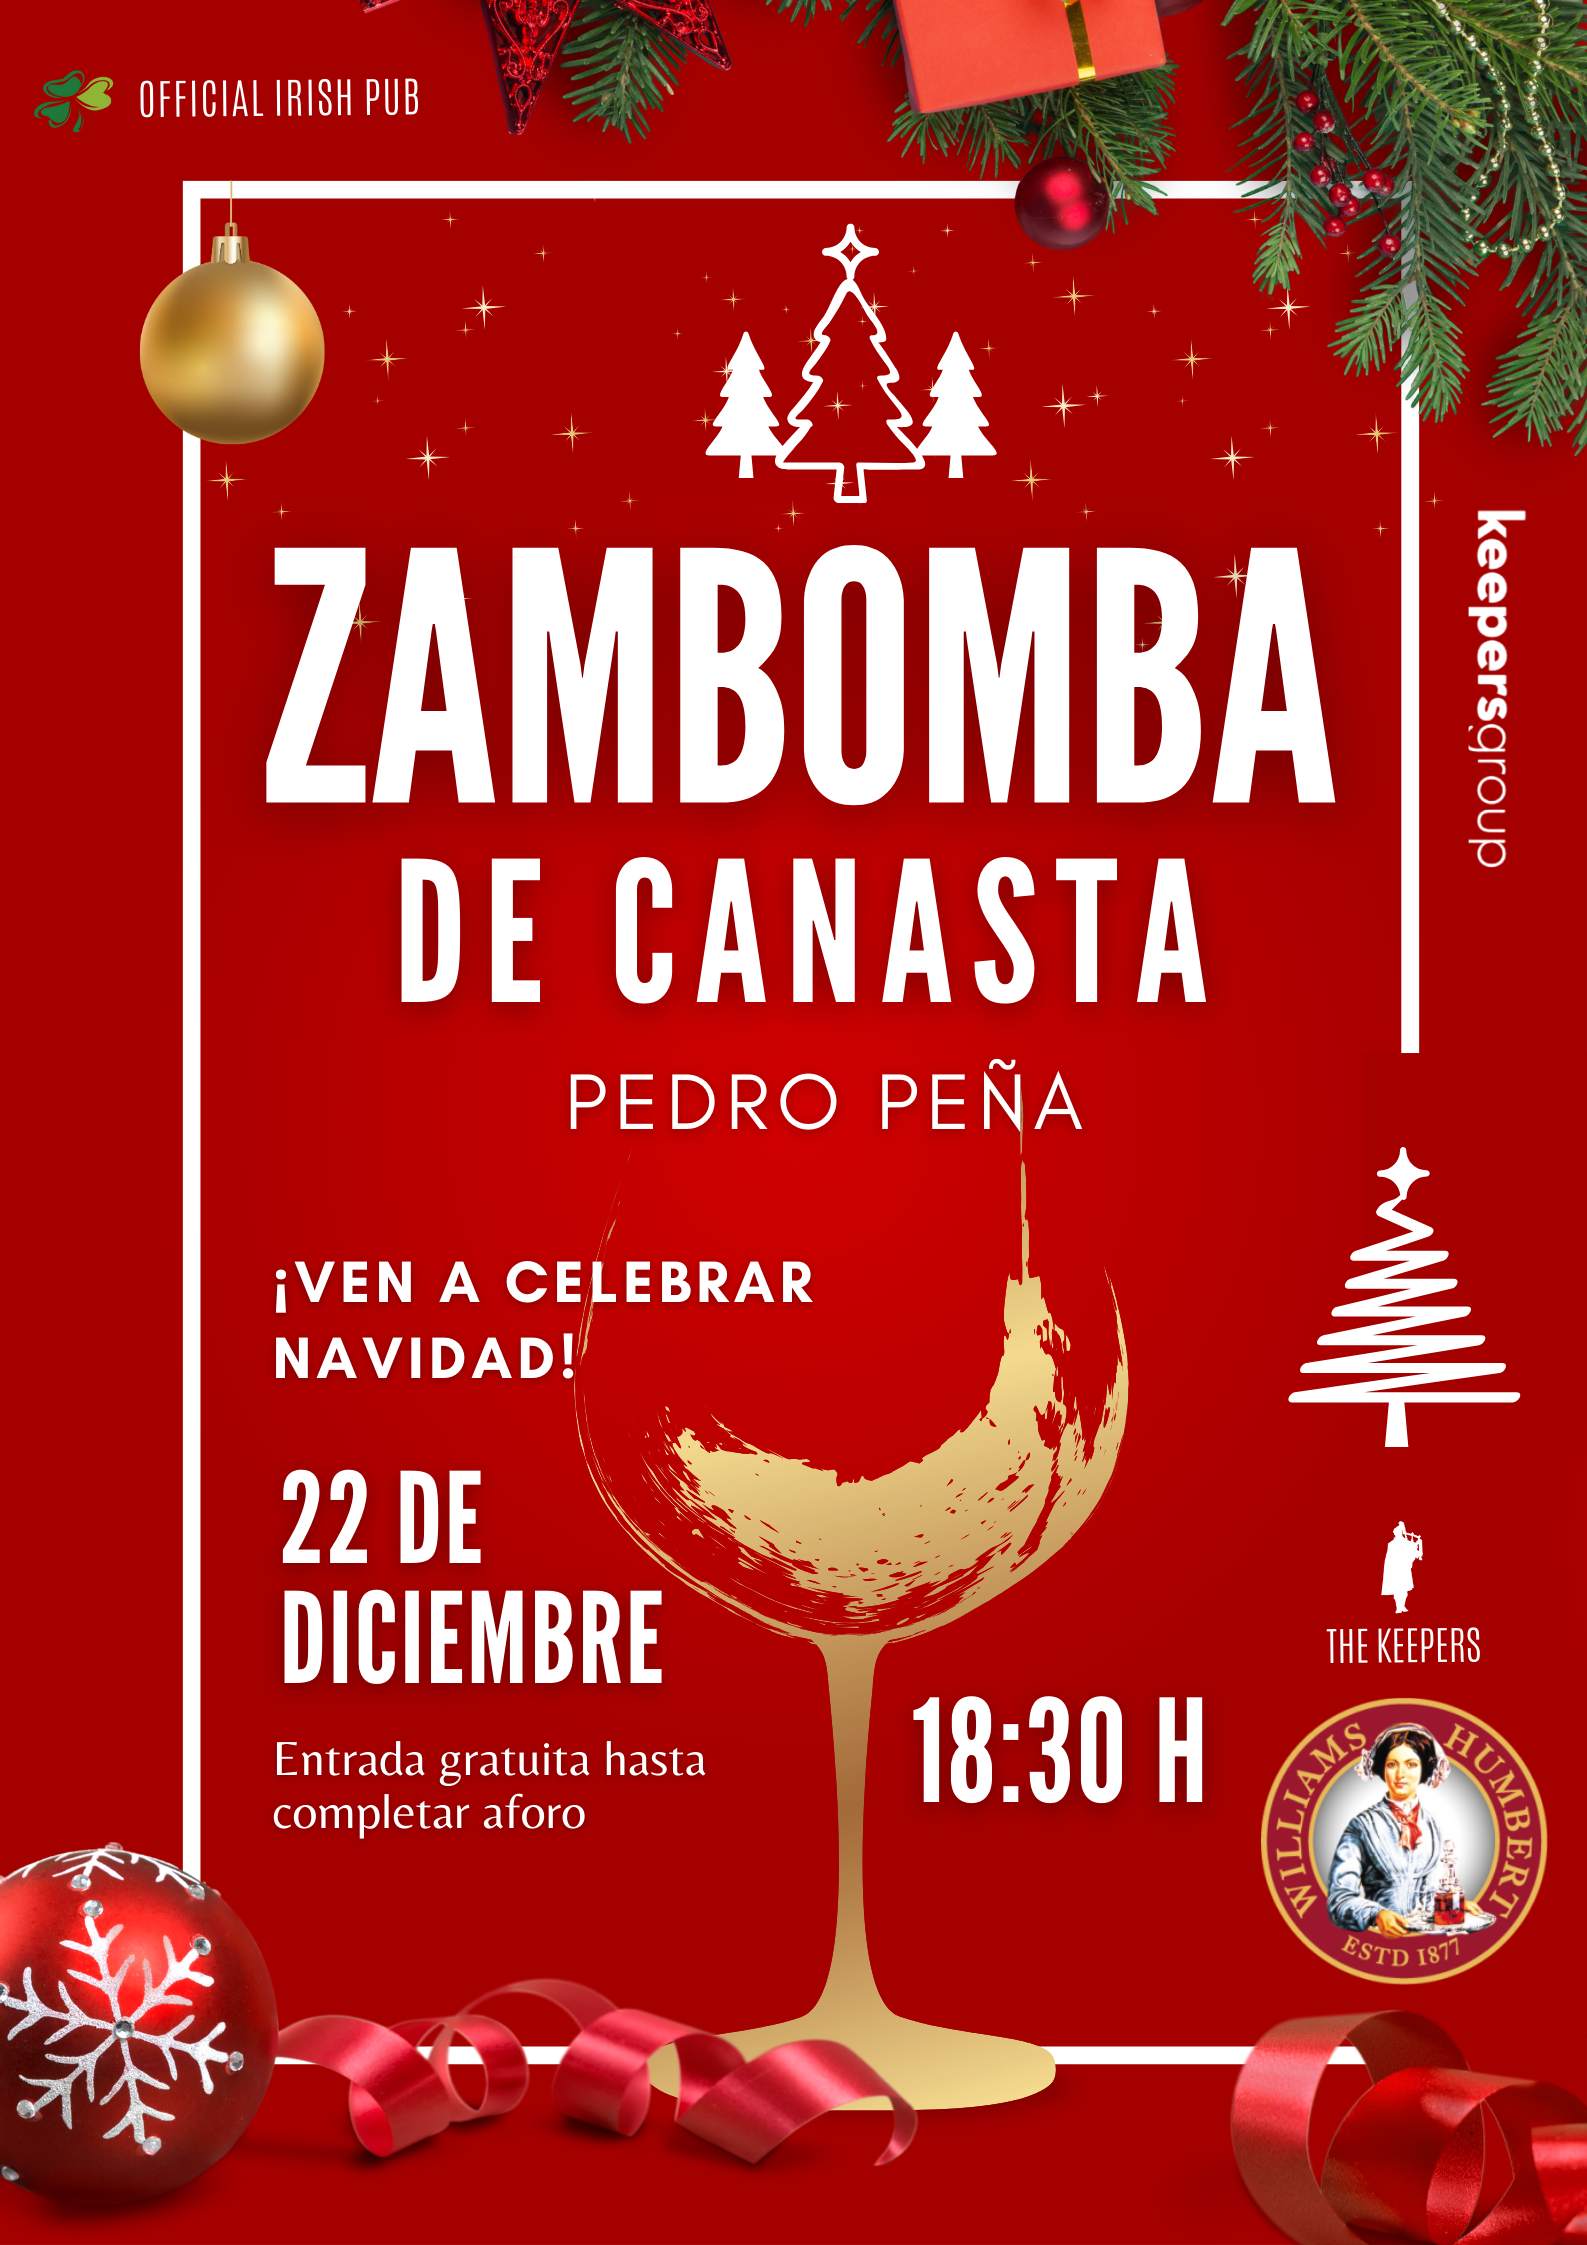 Zambomba de Canasta de Pedro Peña en directo